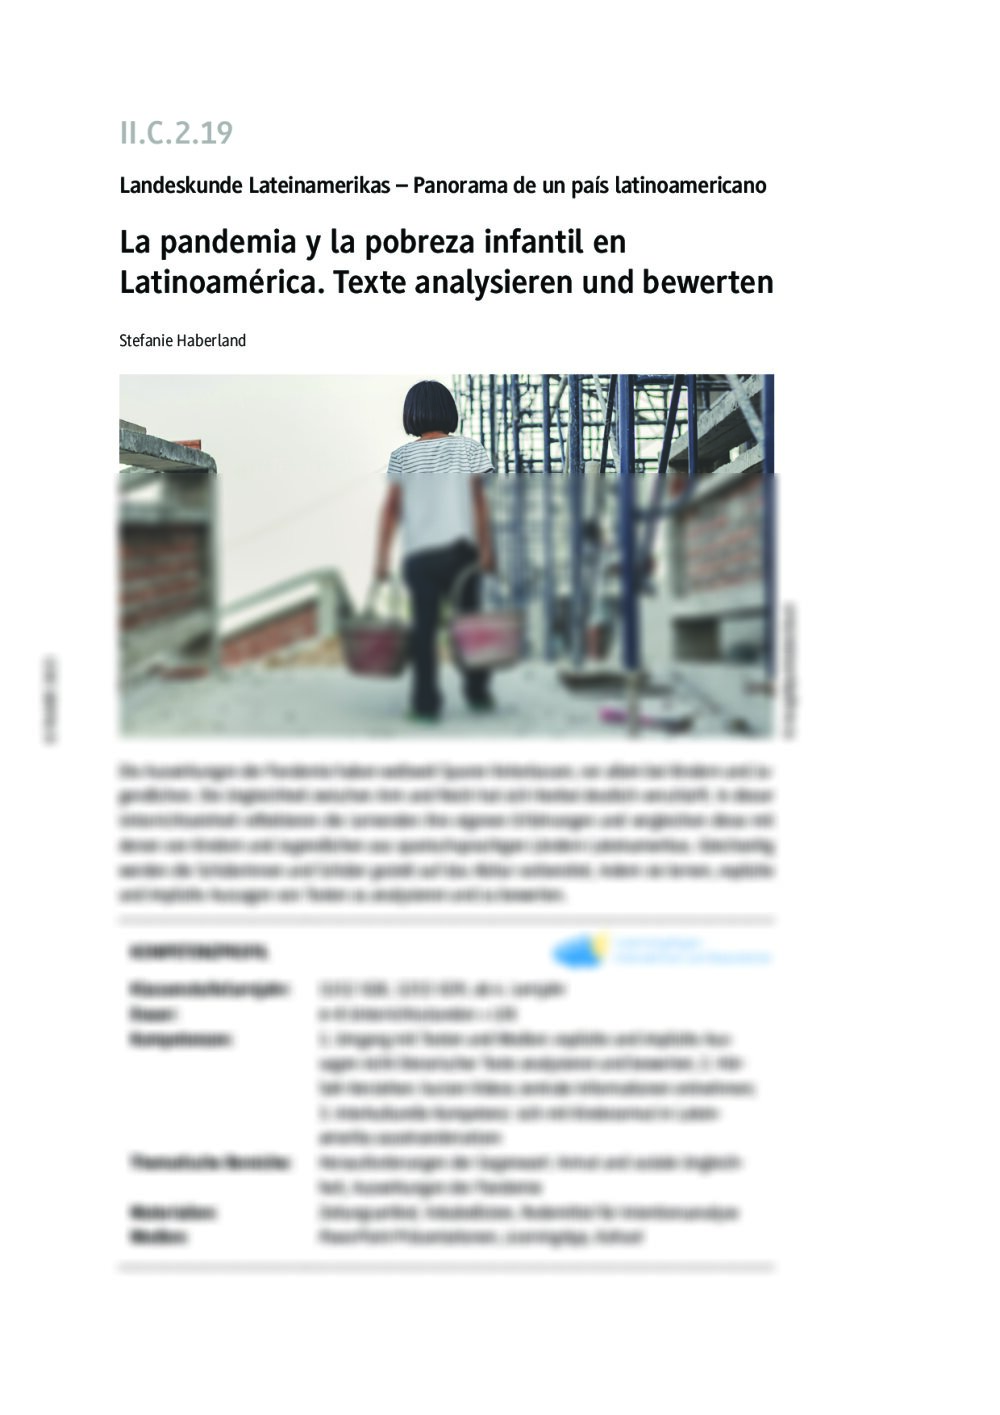 La pandemia y la pobreza infantil en Latinoamérica - Seite 1